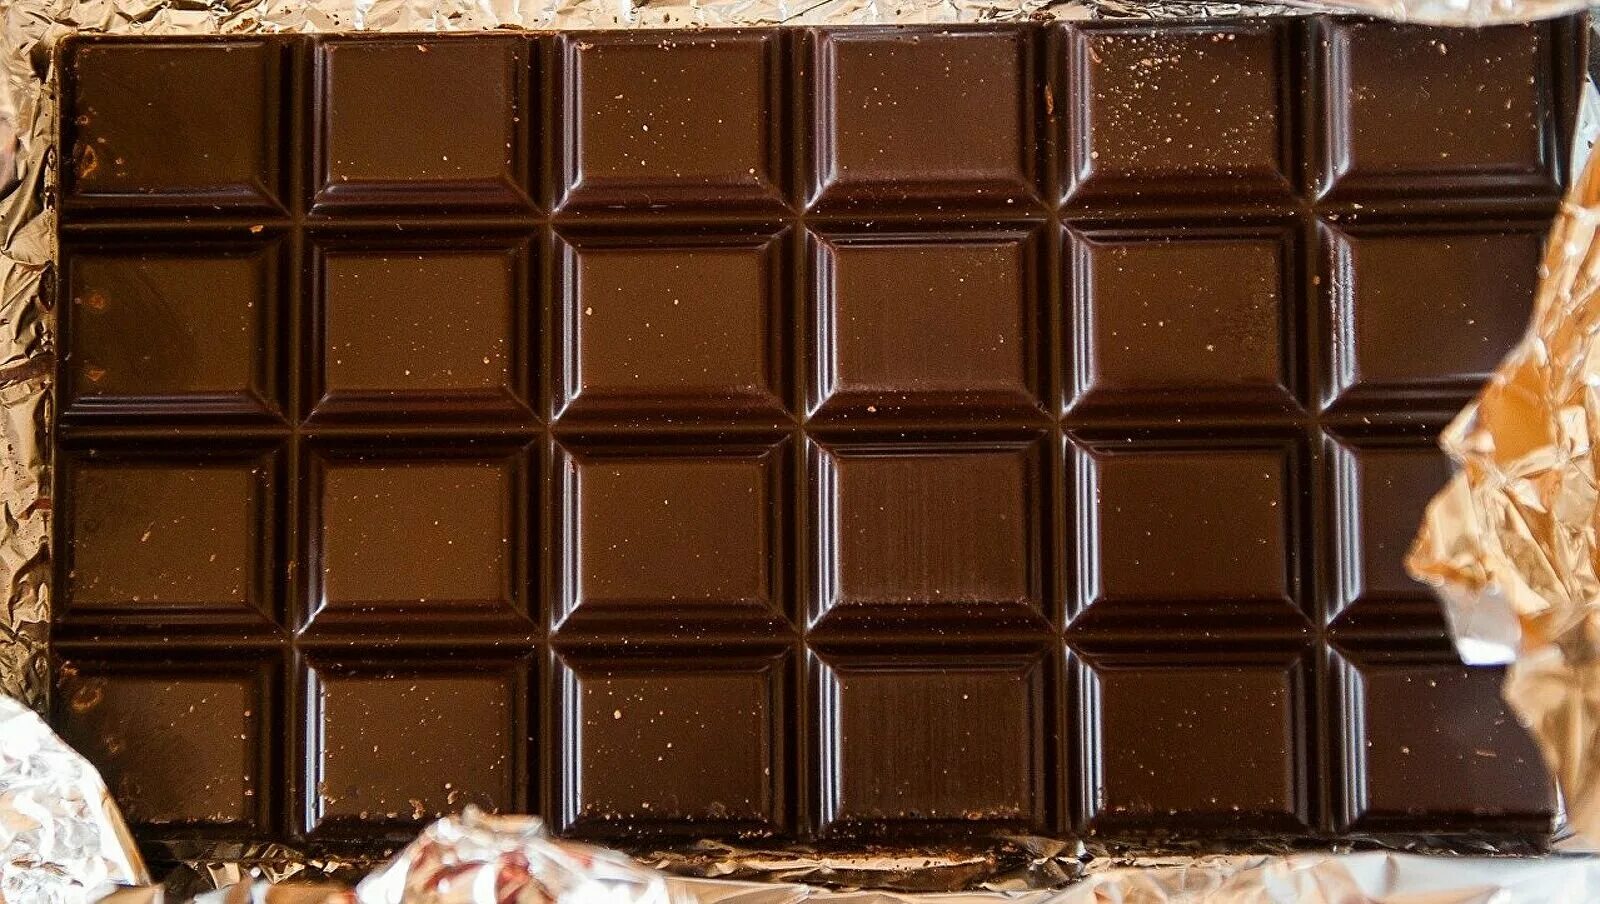 Шоколад шоколадку. Плитка шоколада. Шоколадка плитка. Плиточный шоколад. Плиточка шоколада.